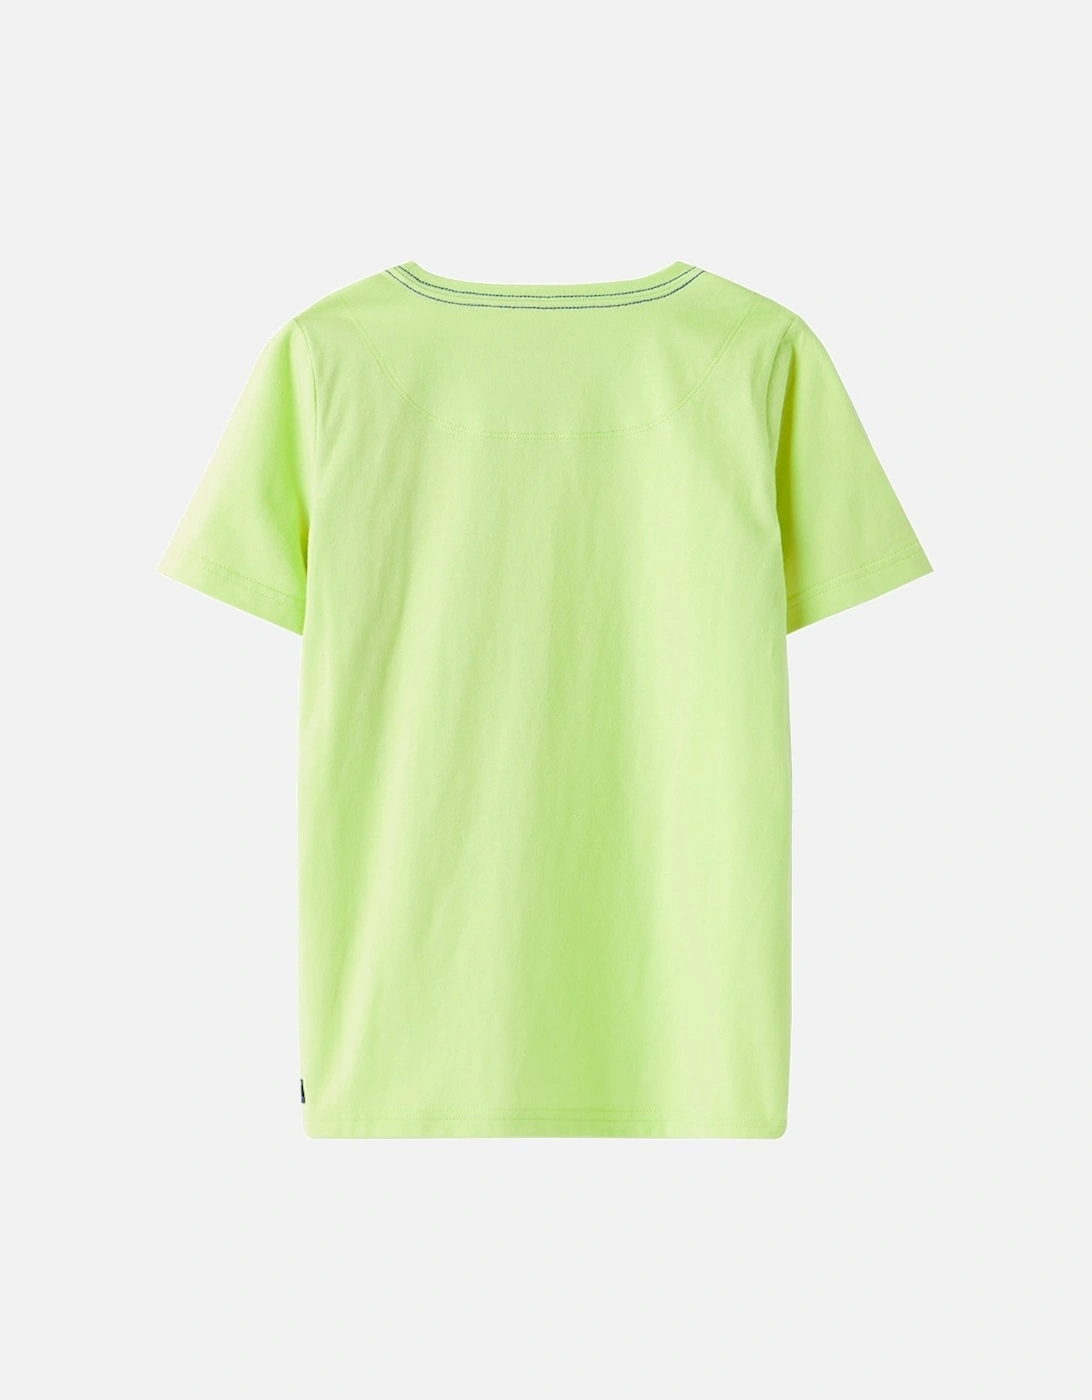 Archie App T-Shirt Lime Croc